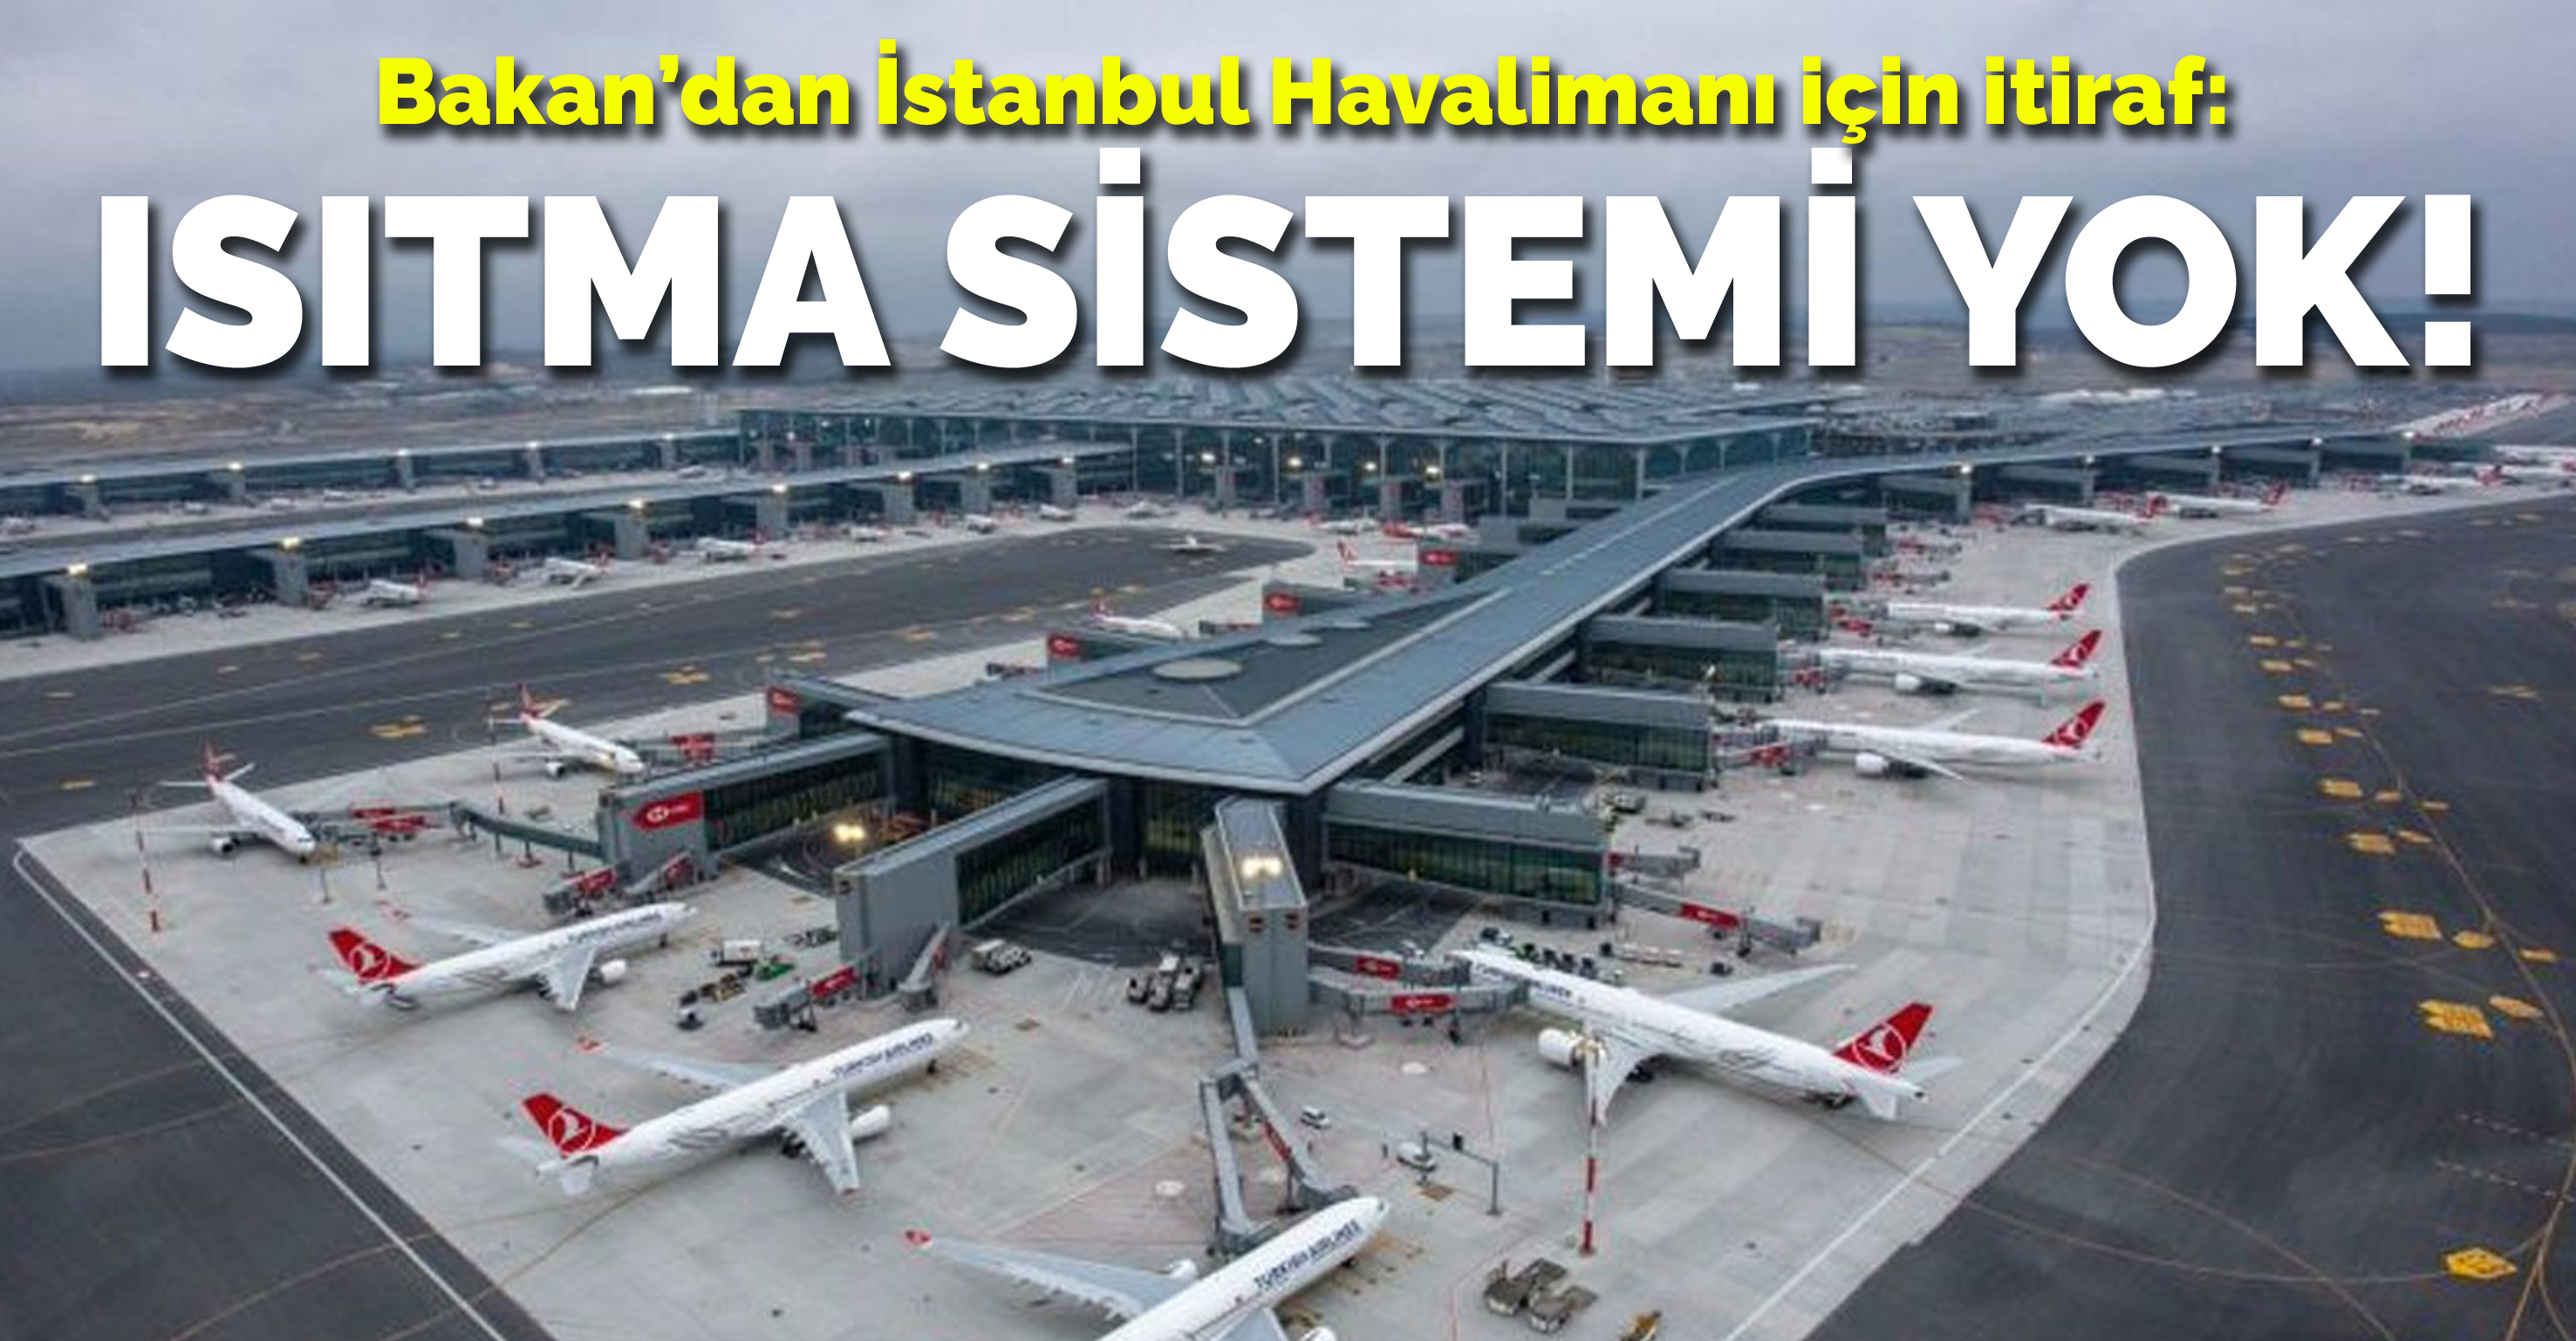 Bakan’dan İstanbul Havalimanı için bir itiraf daha: Isıtma sistemi yok!